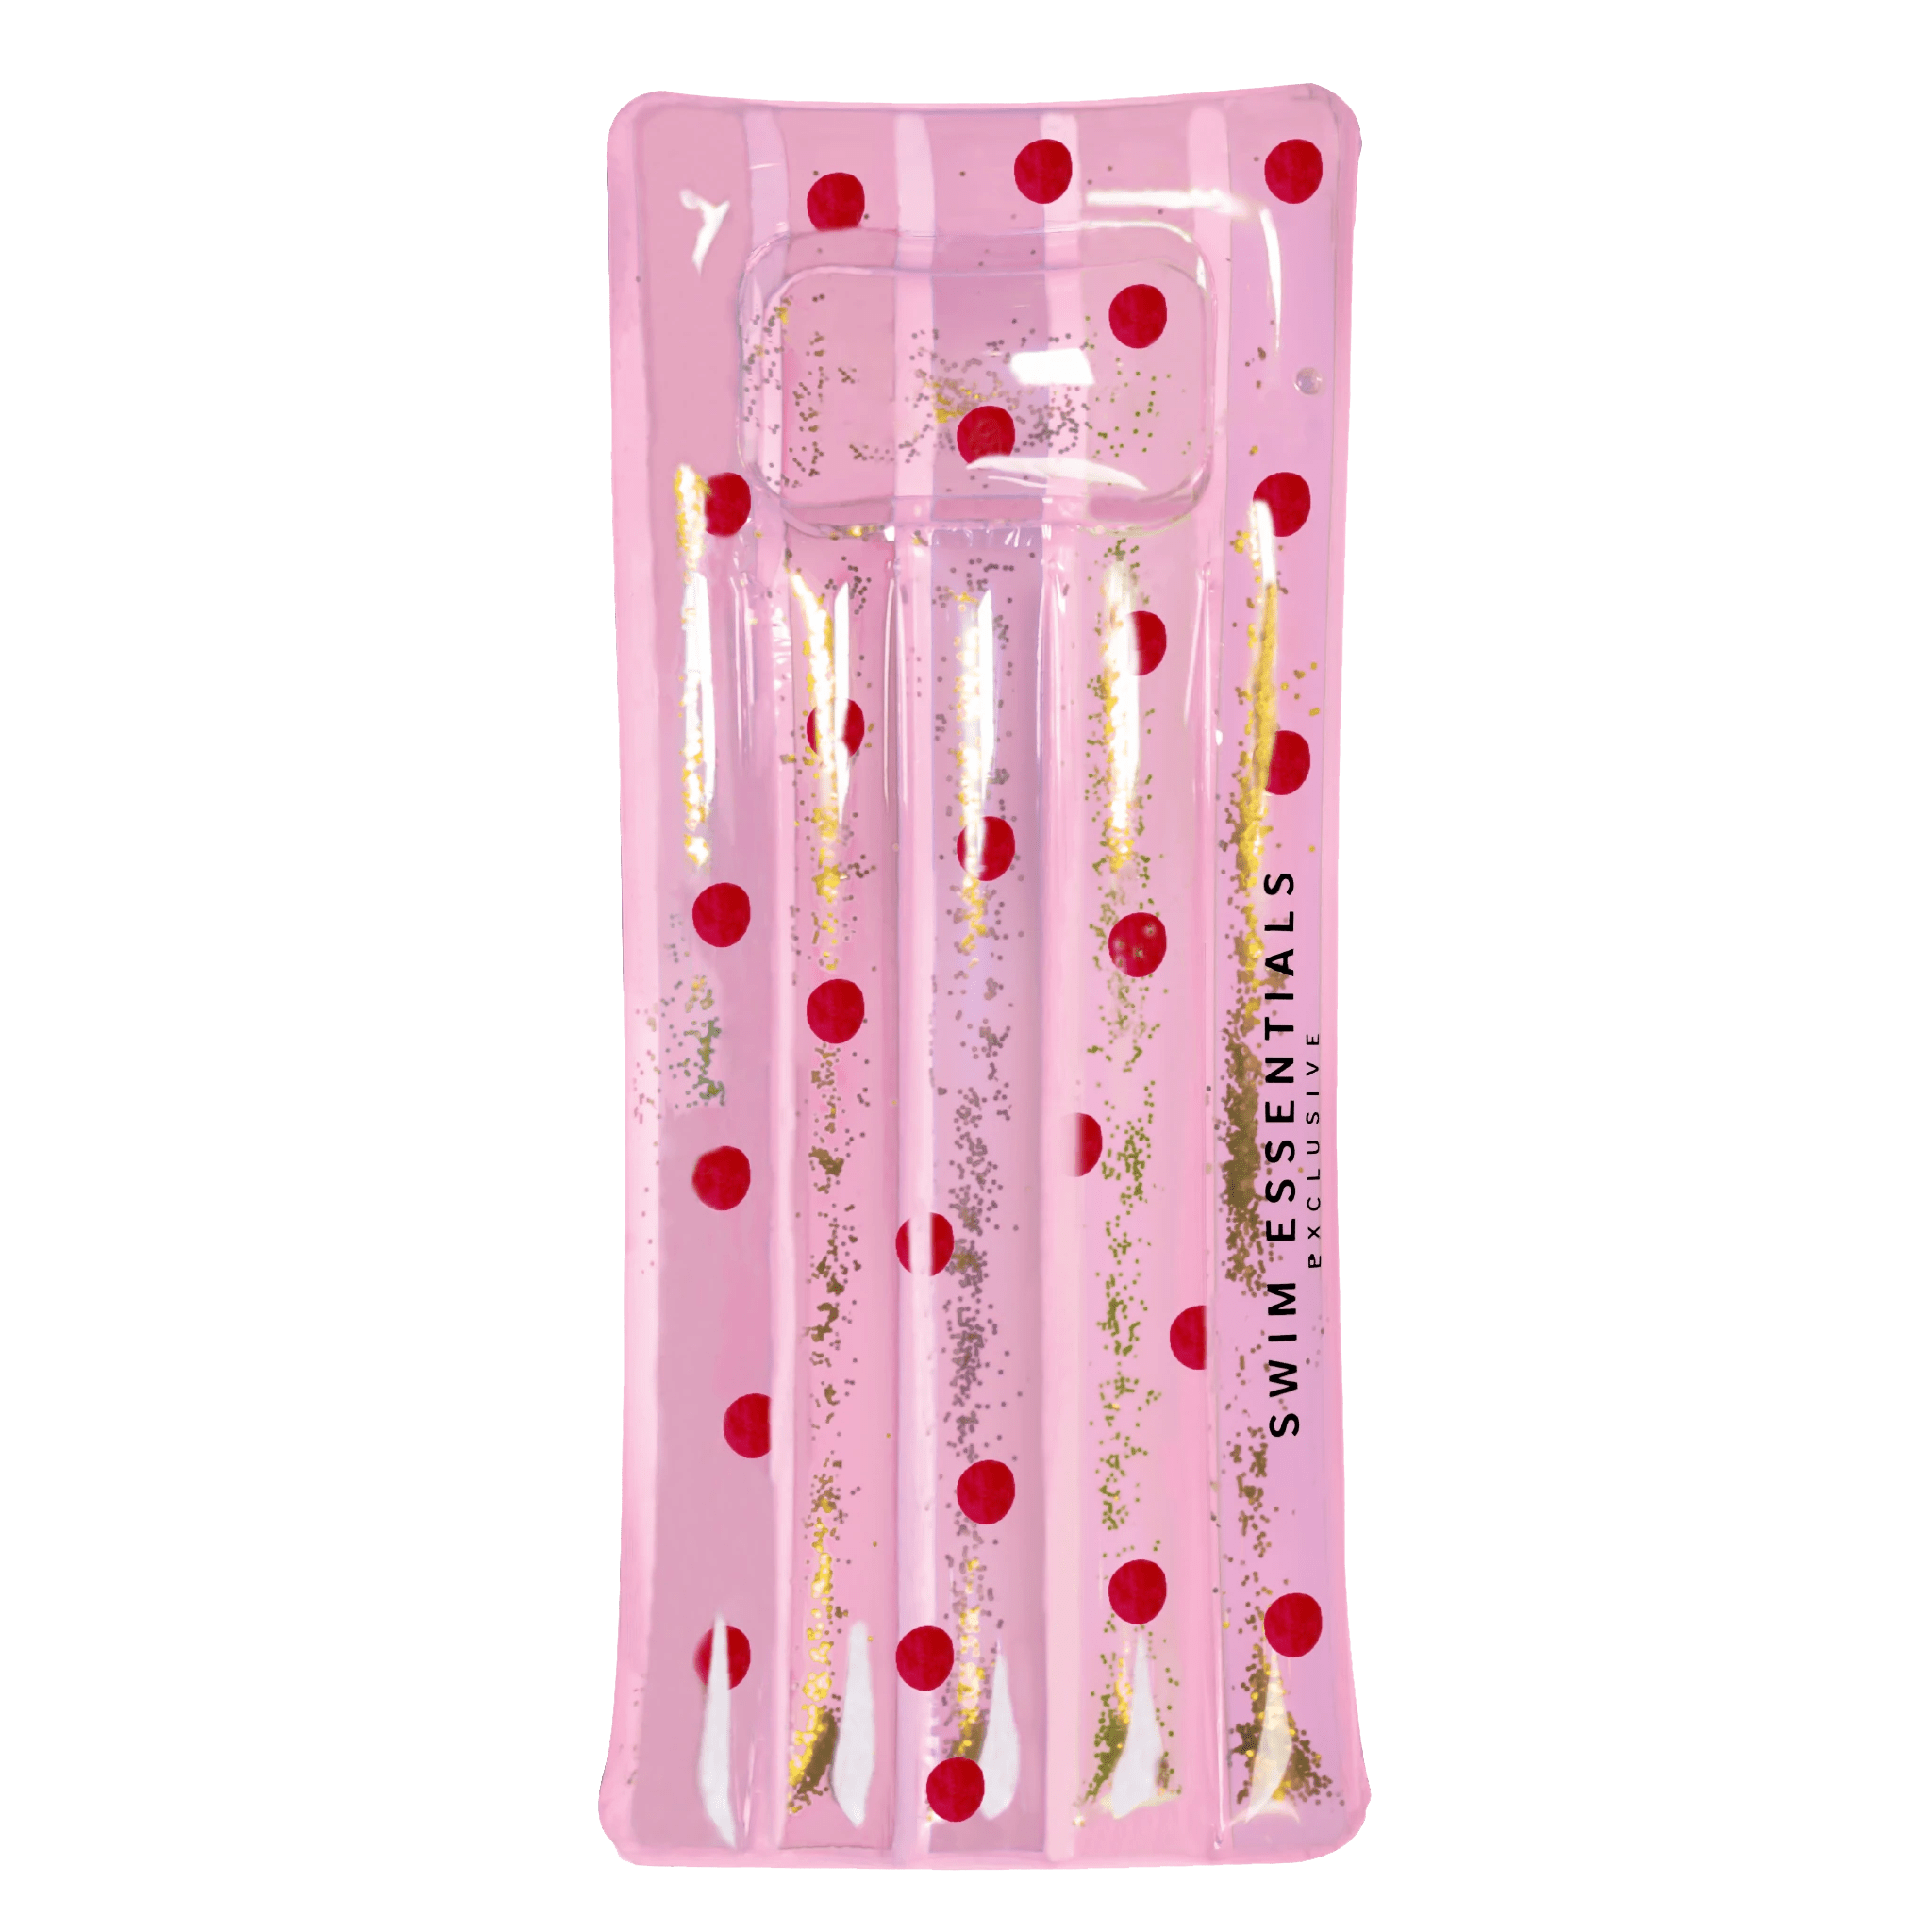 The Essentials Pink Glitter Polka Dot Mat